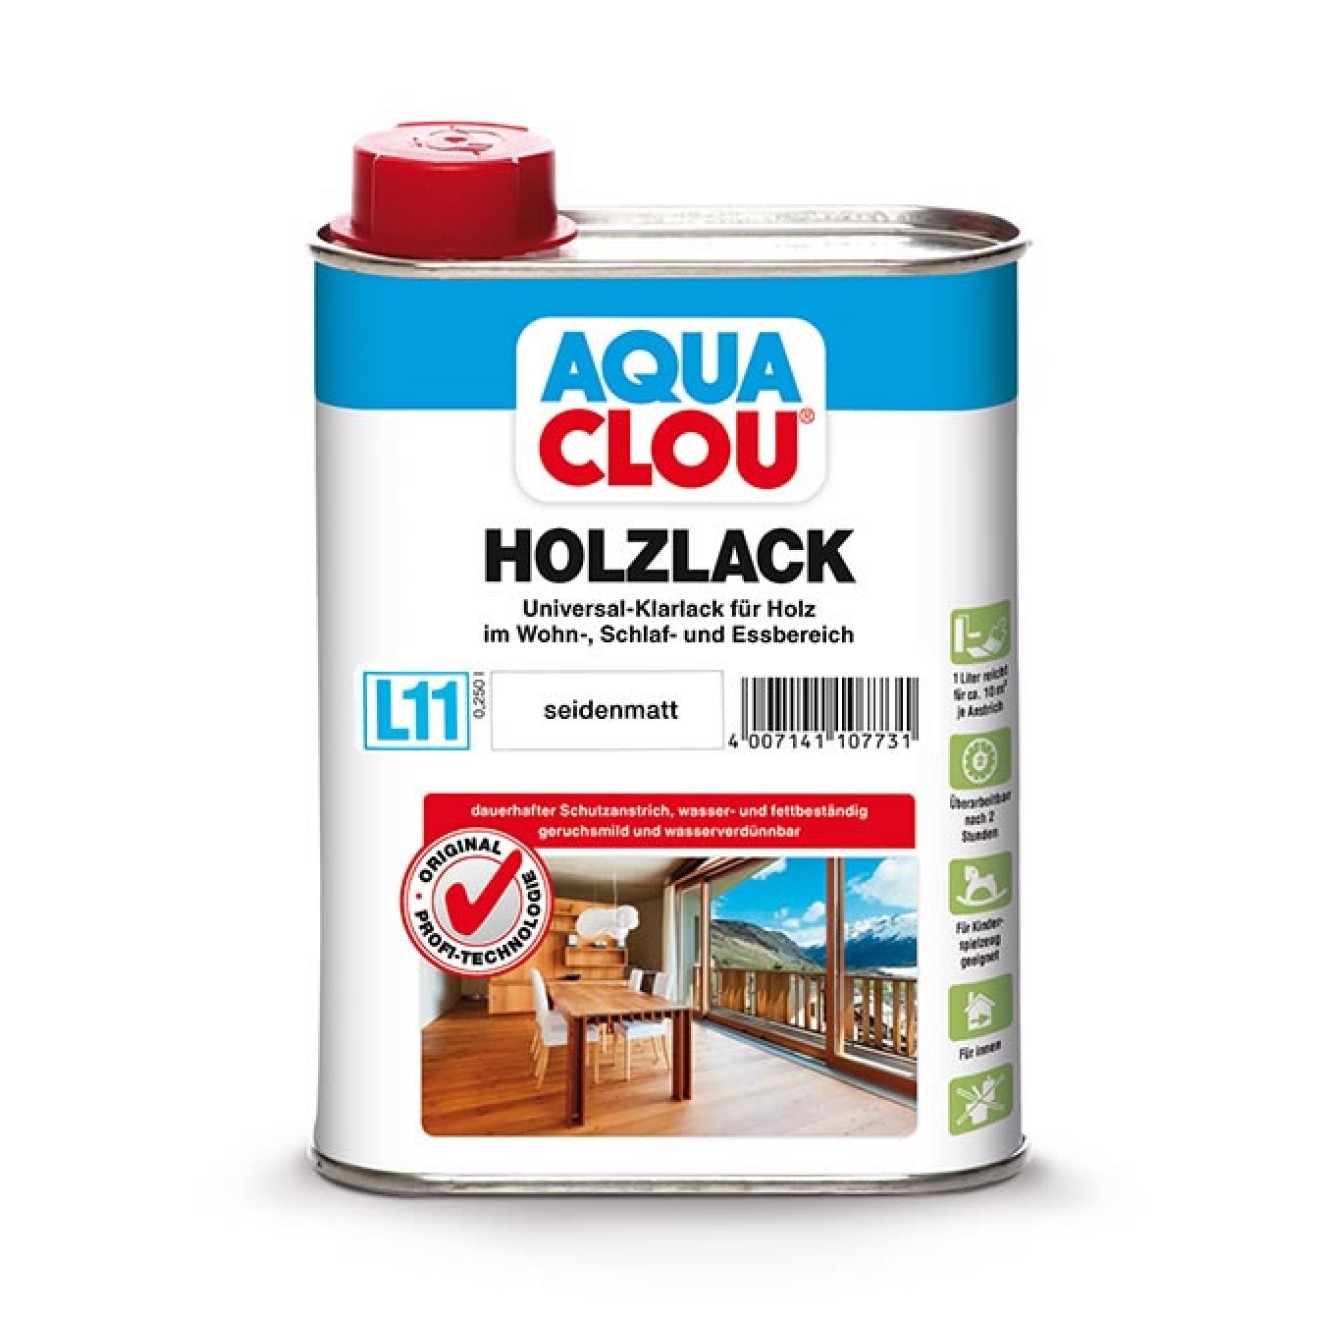 L11 Aqua Holzlack Clou